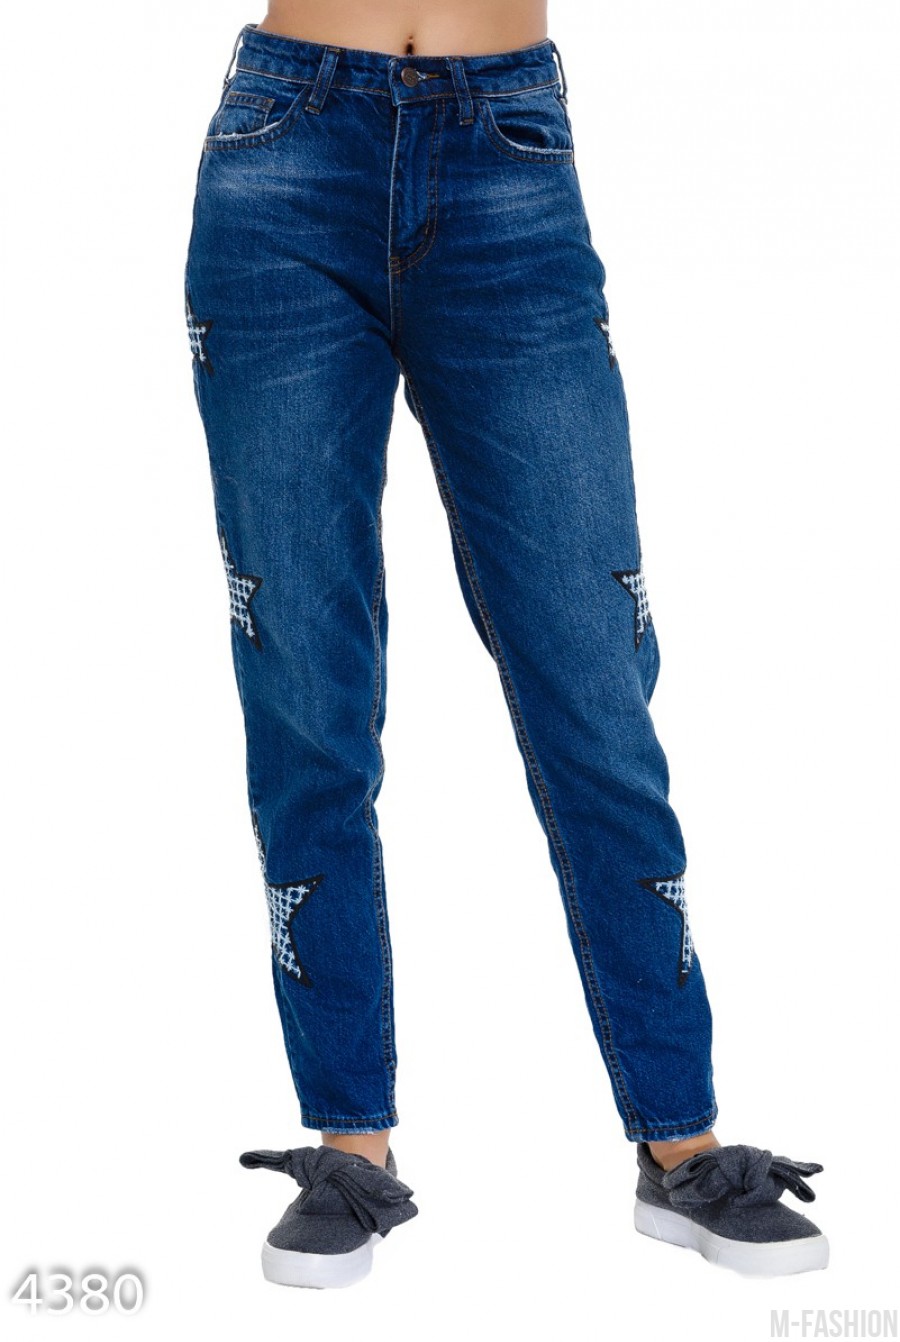 Синие джинсы с клетчатыми звездами по бокам - Фото 1